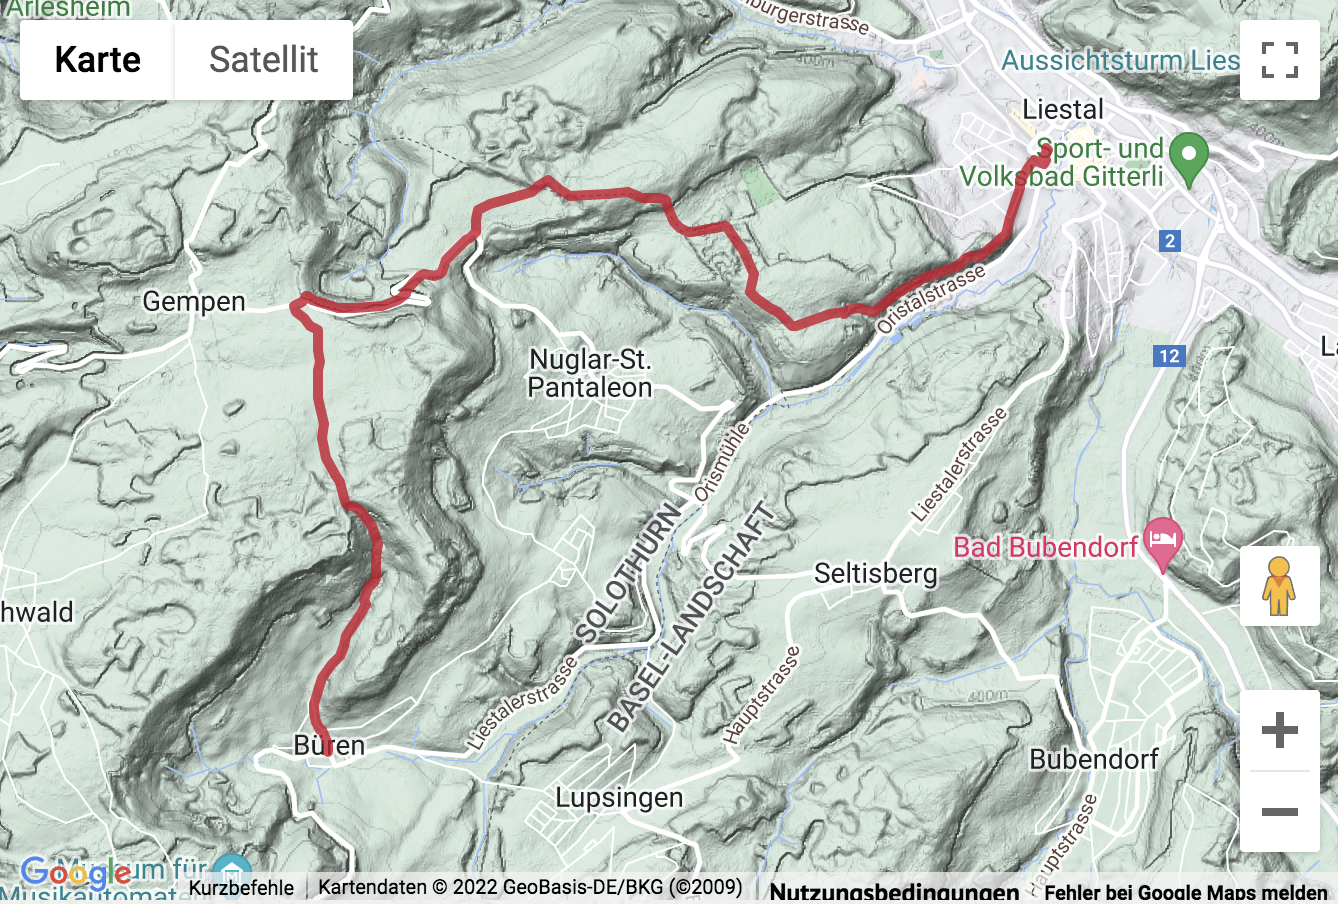 Übersichts-Routenkarte für die Wanderung durchs Schwarzbubenland nach Liestal